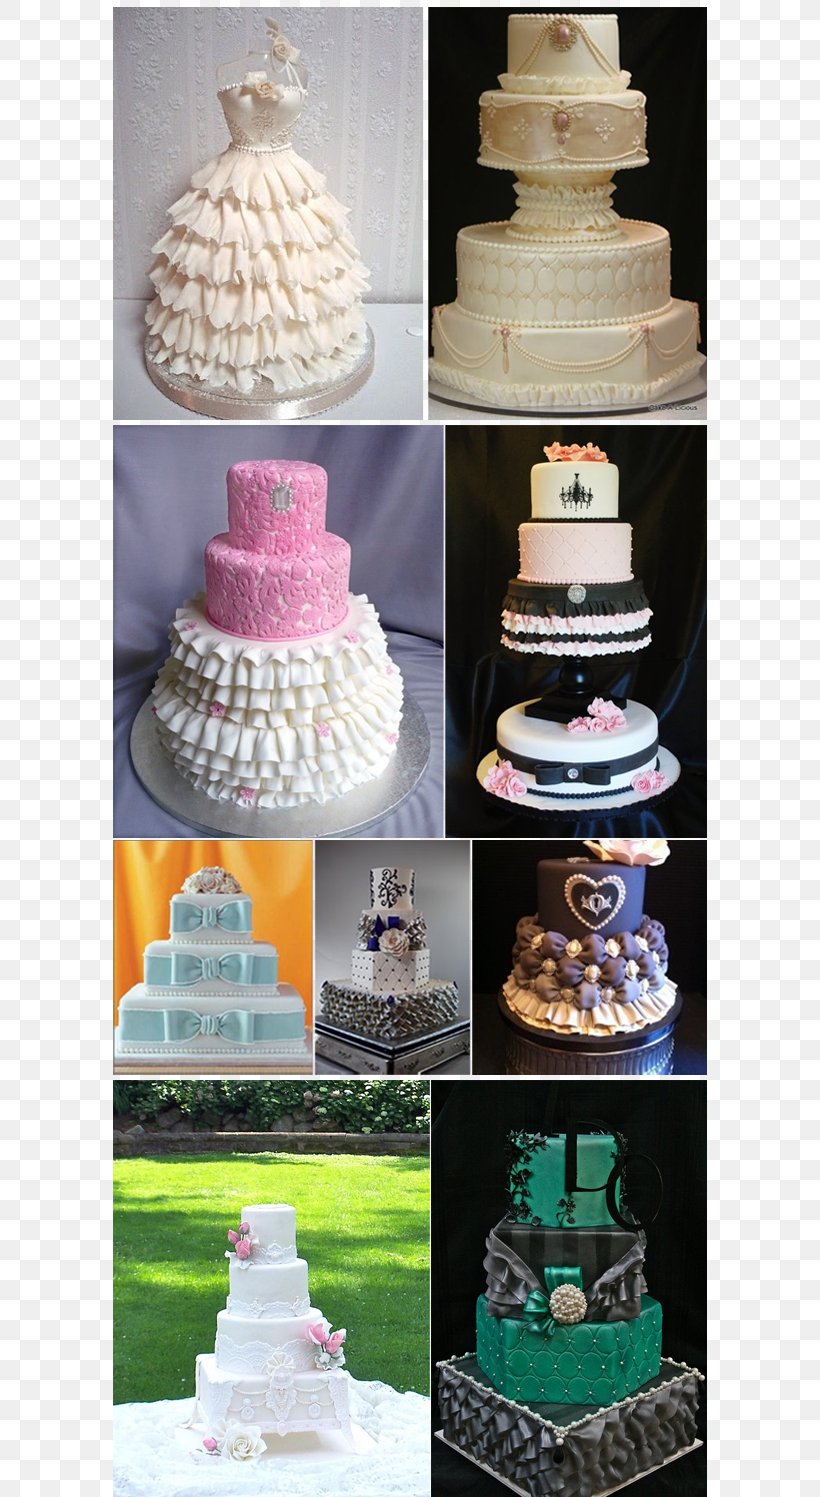 Wedding Cake Fruitcake Torte Cake Decorating Buttercream, PNG, 725x1497px, Wedding Cake, Baking, Buttercream, Cake, Cake Decorating Download Free